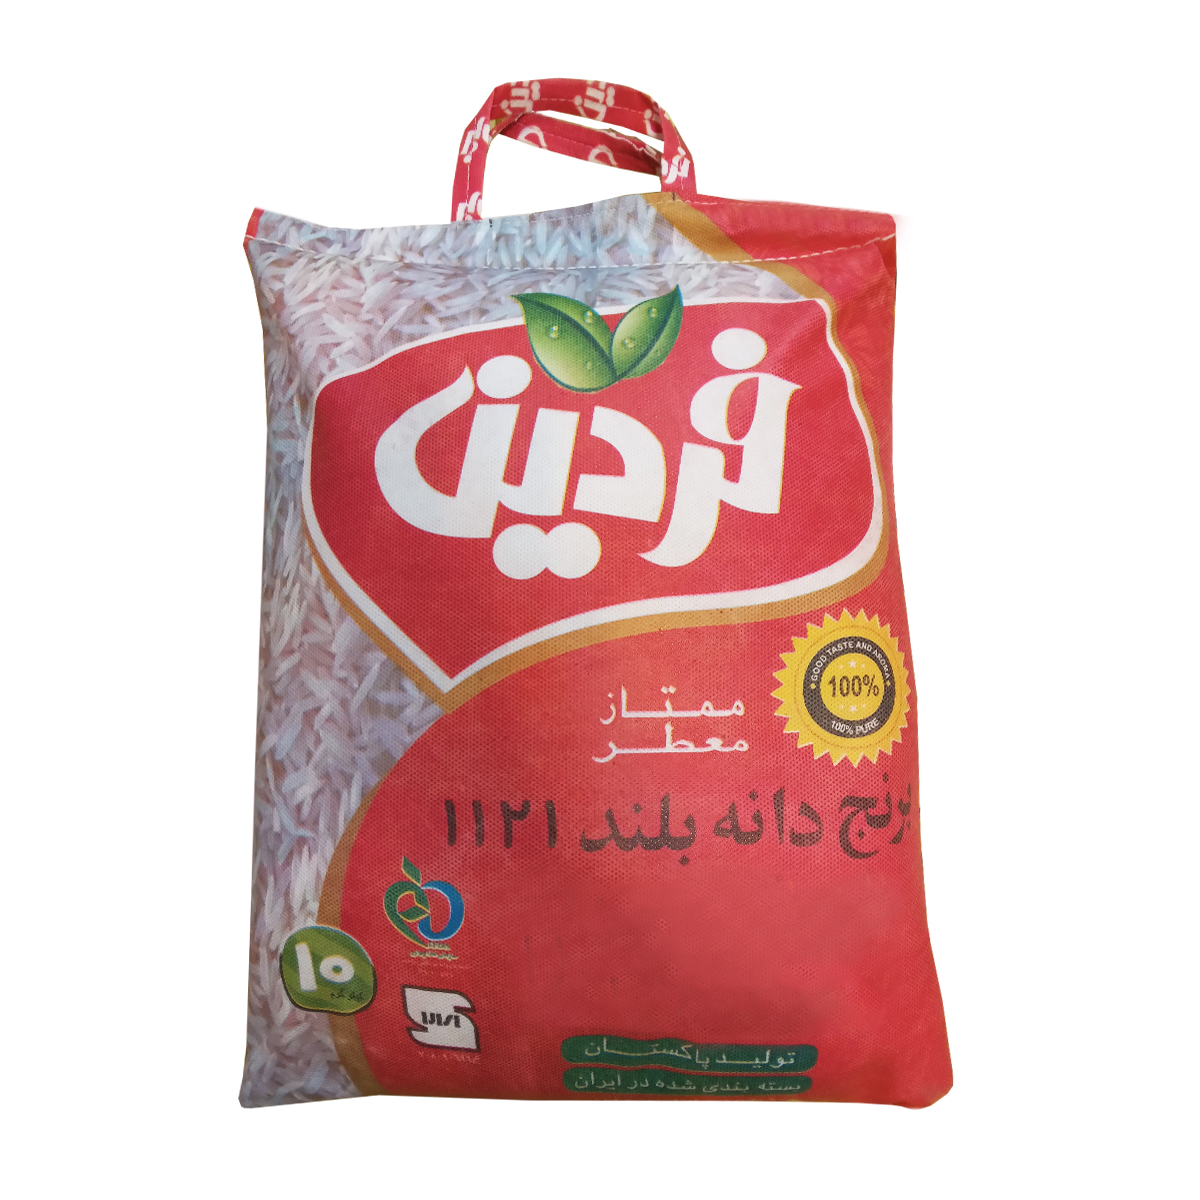 نکته خرید - قیمت روز برنج پاکستانی دانه بلند فردین - 10 کیلوگرم خرید